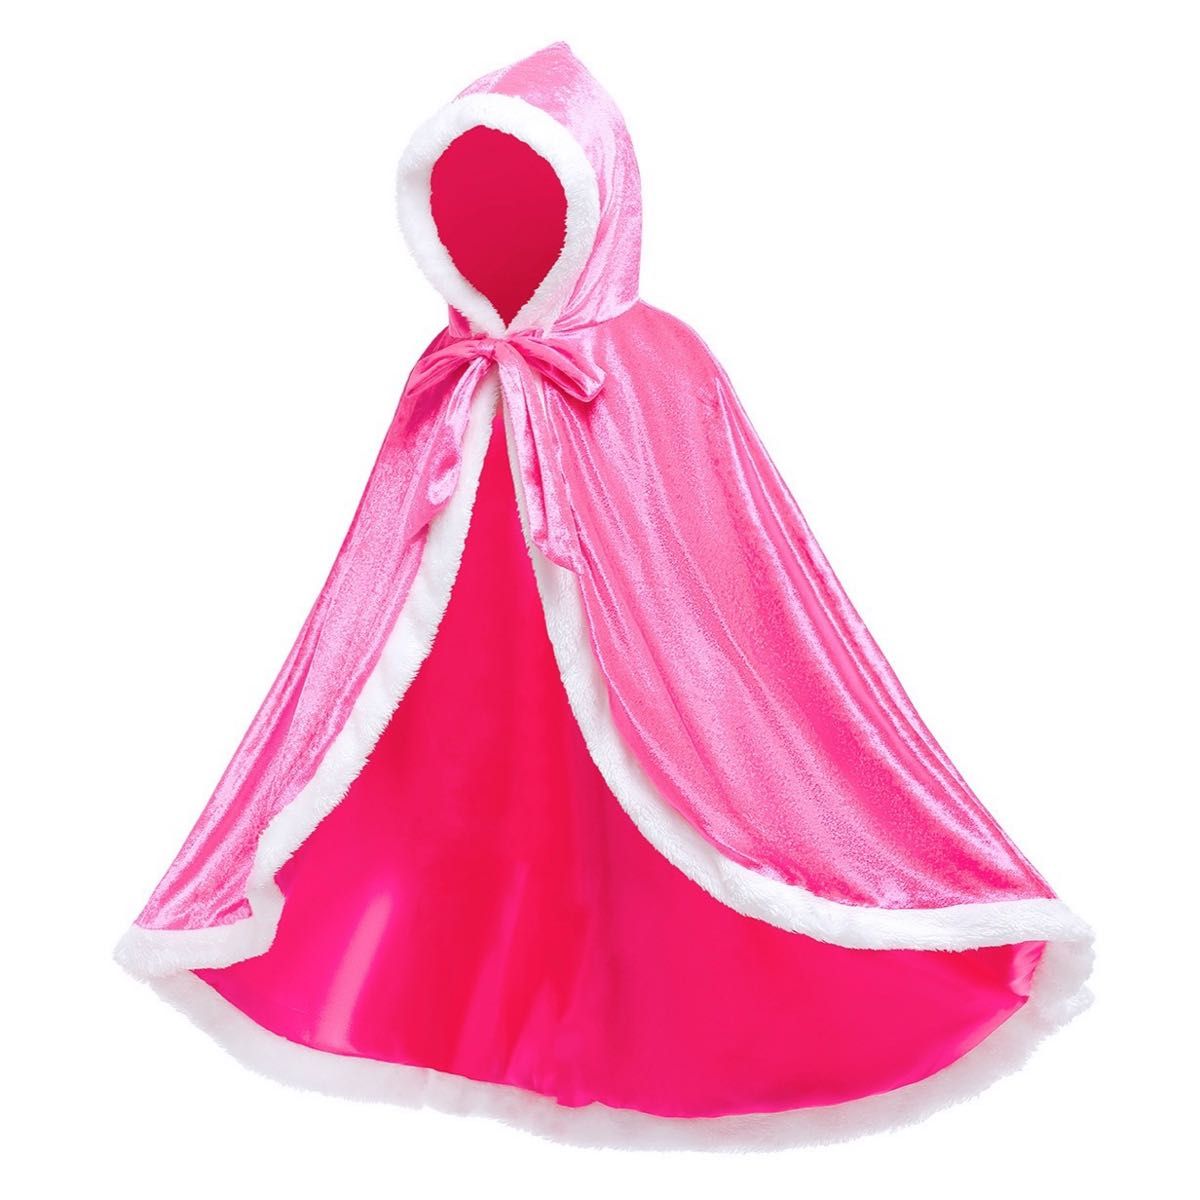 【新品】 プリンセス マント ケープ ドレス 仮装 女の子 ピンク 120